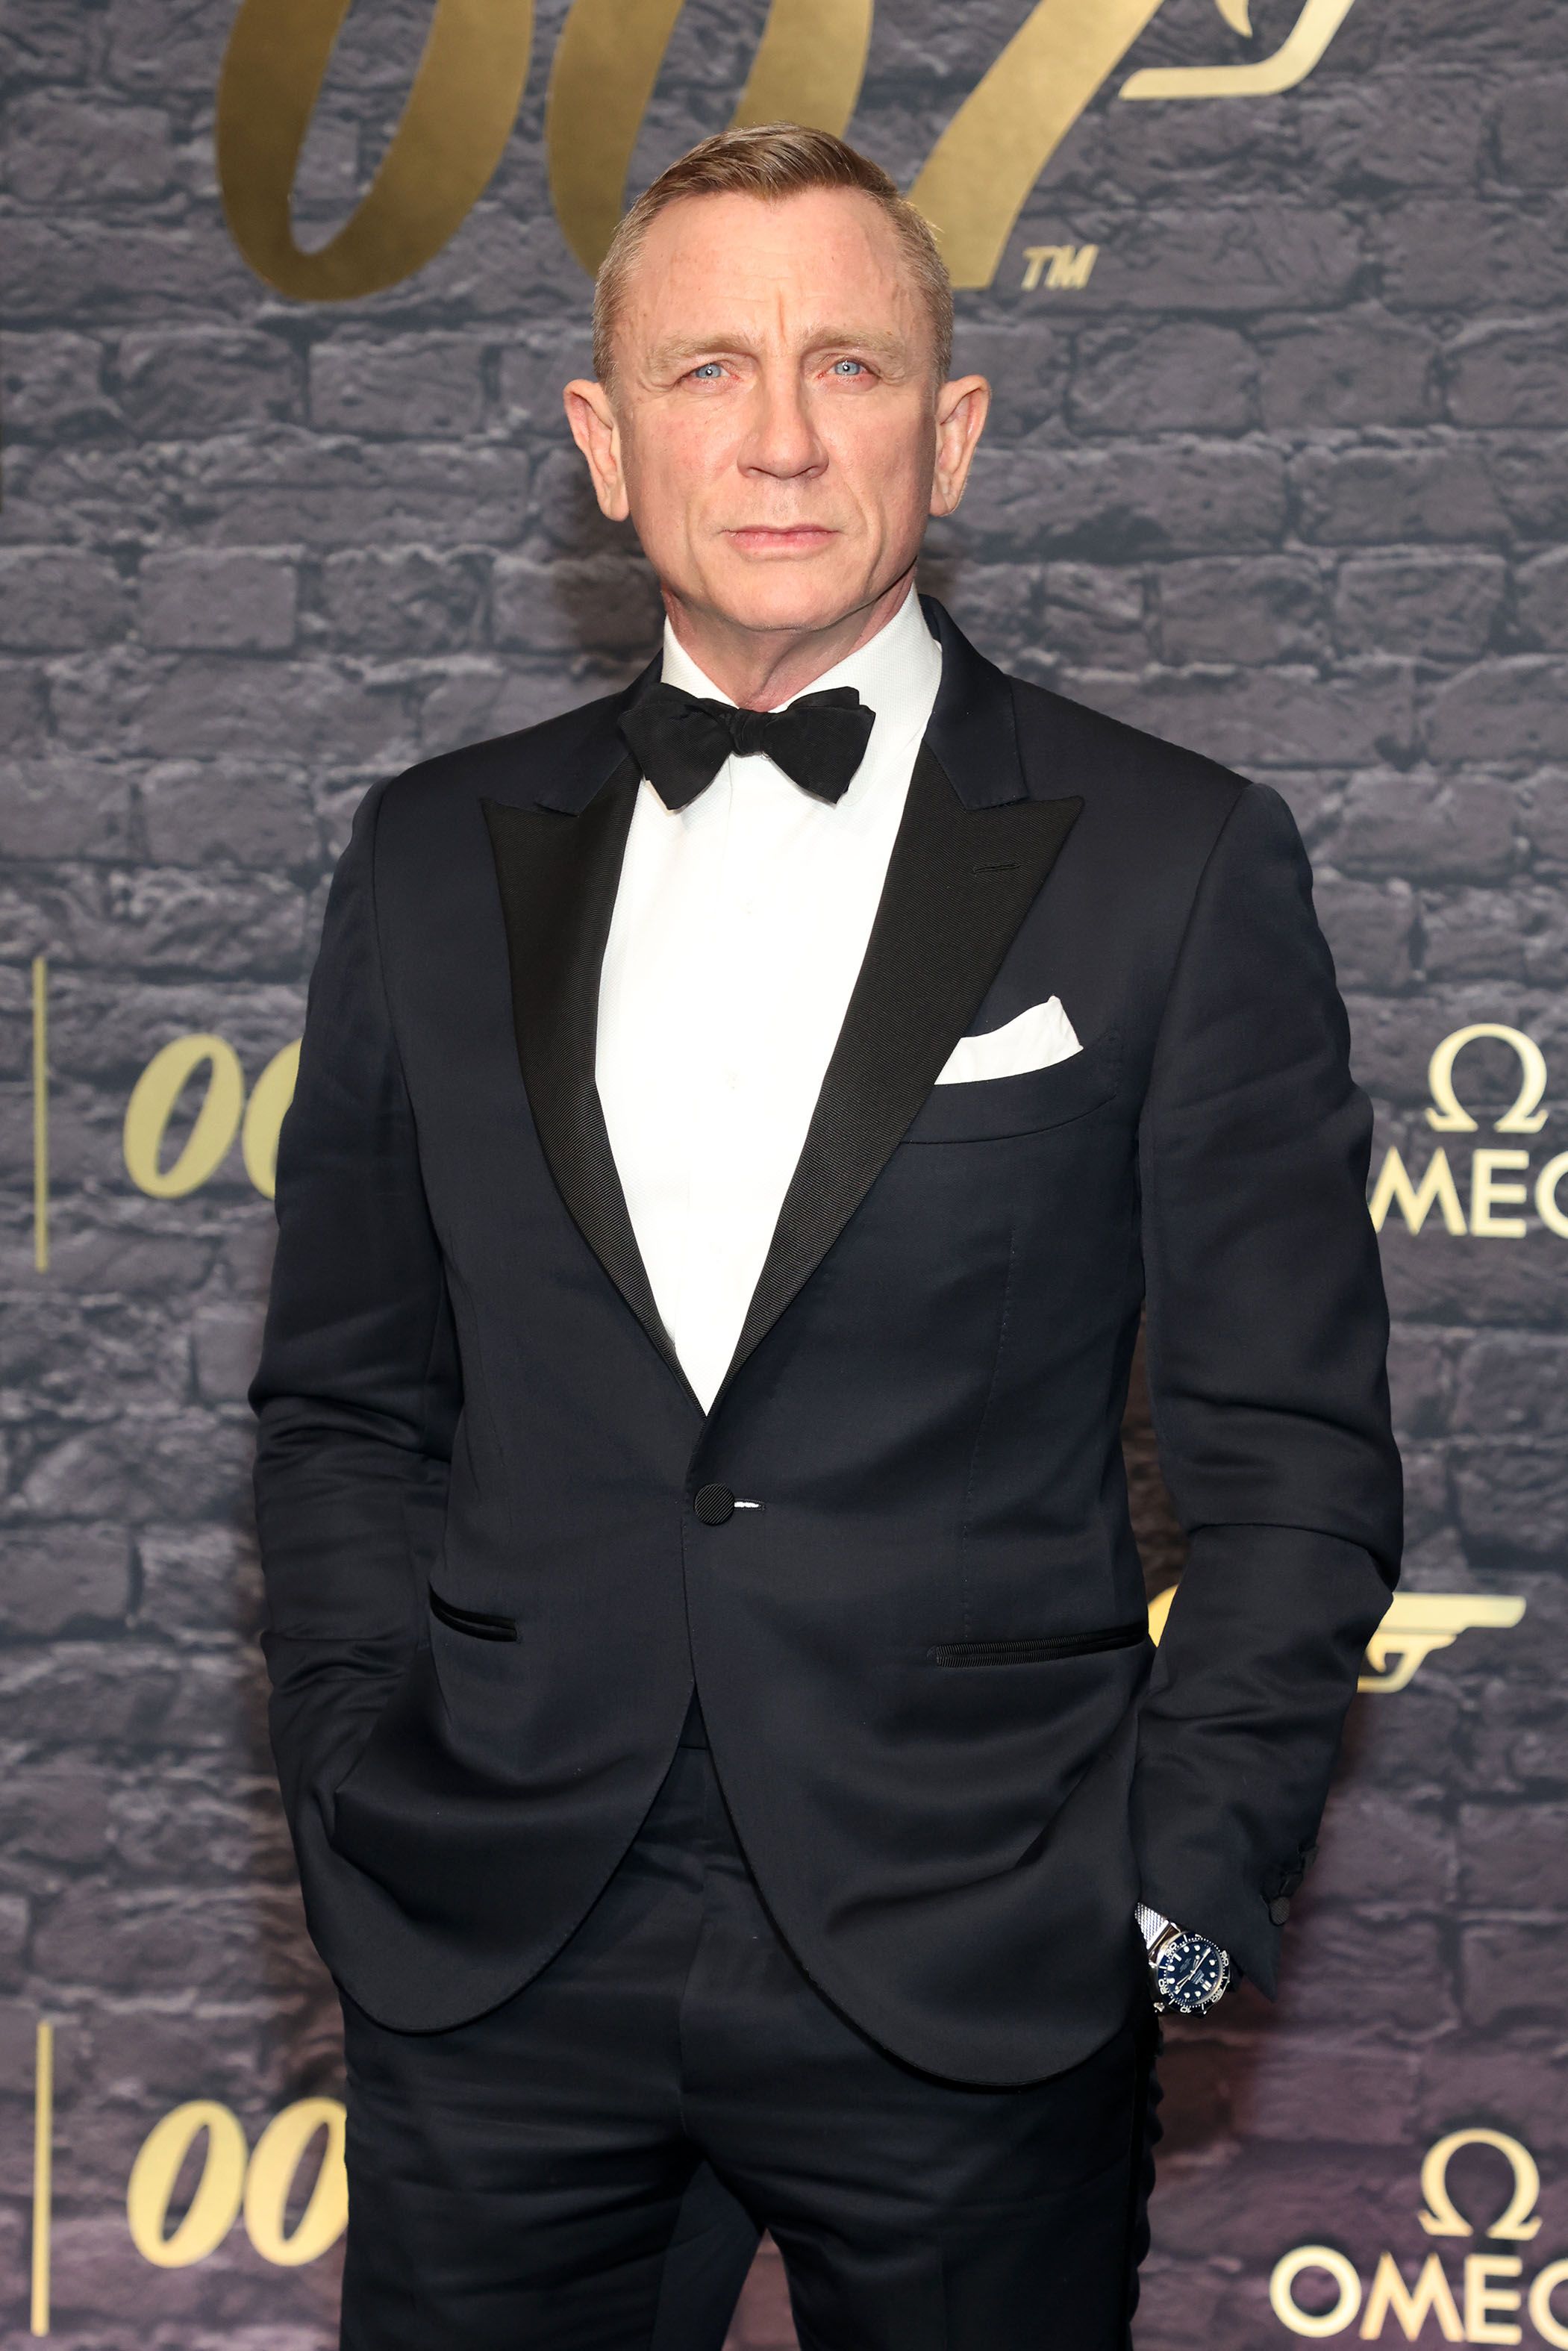 Estes são os possíveis favoritos para substituir Daniel Craig como James Bond